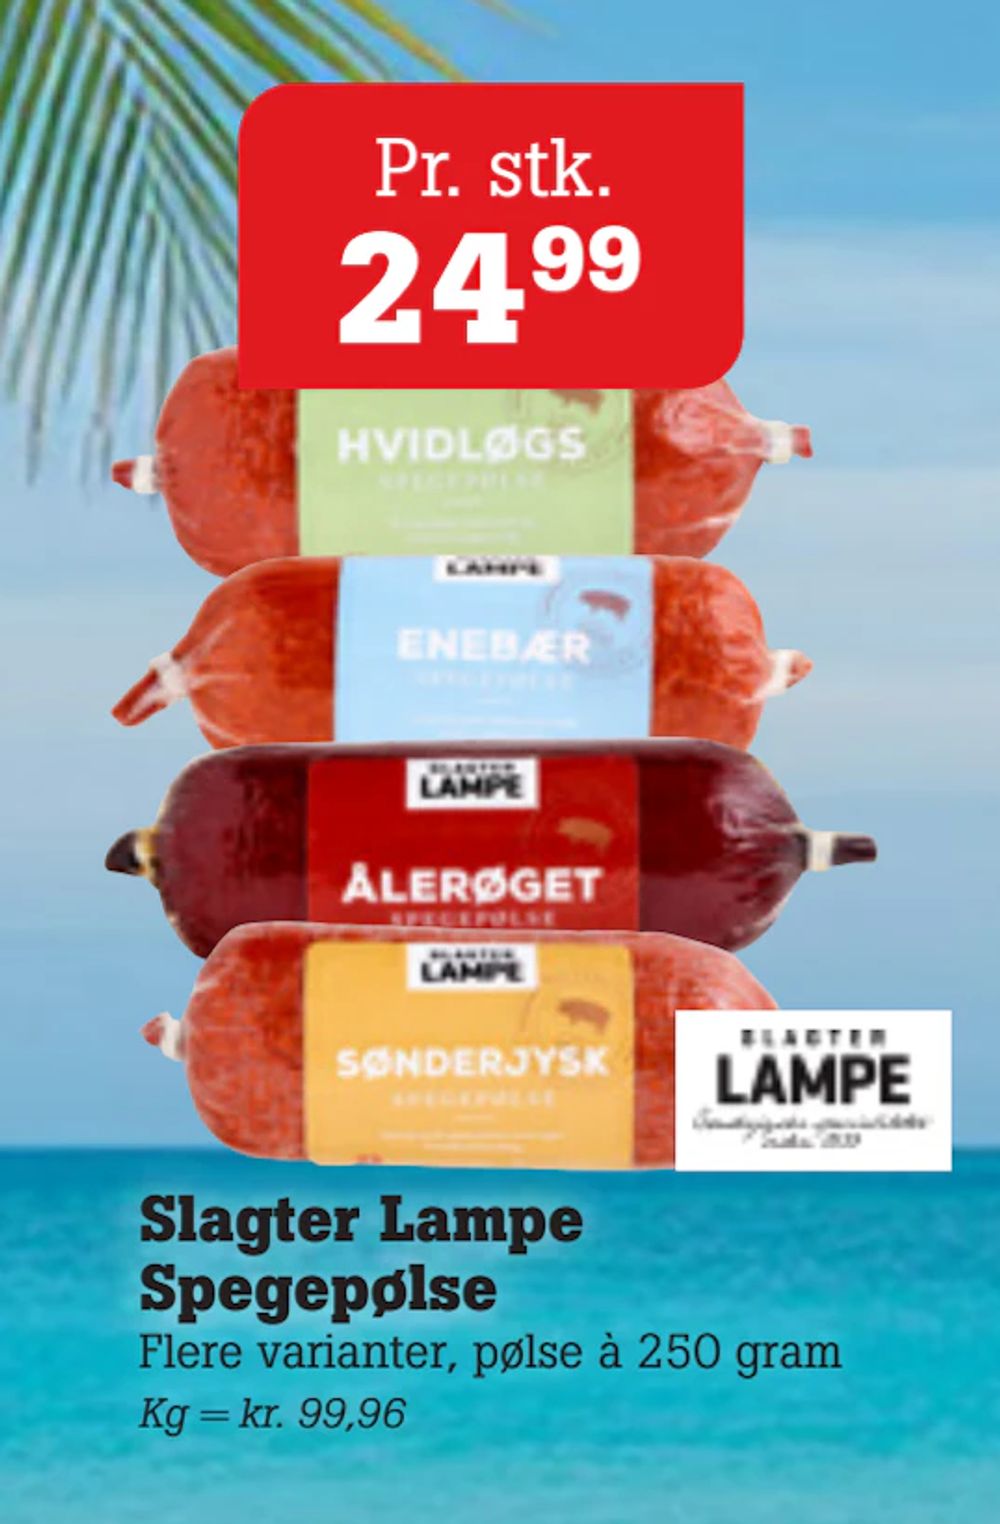 Tilbud på Slagter Lampe Spegepølse fra Poetzsch Padborg til 24,99 kr.